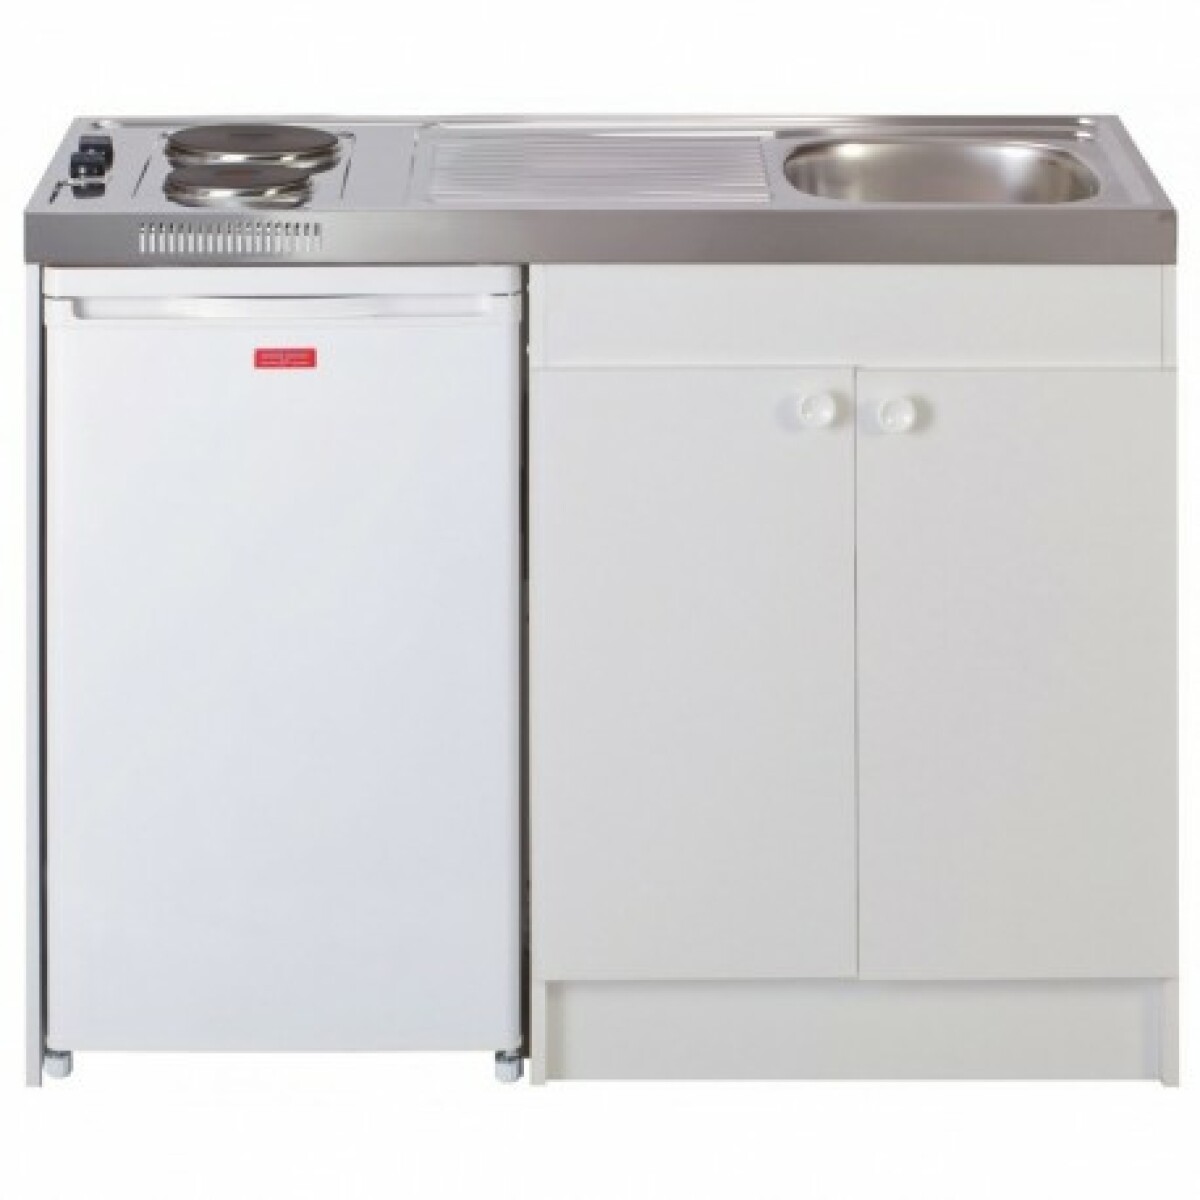 Évier cuisinette électrique intégré largeur 120 cm avec réfrigérateur df114